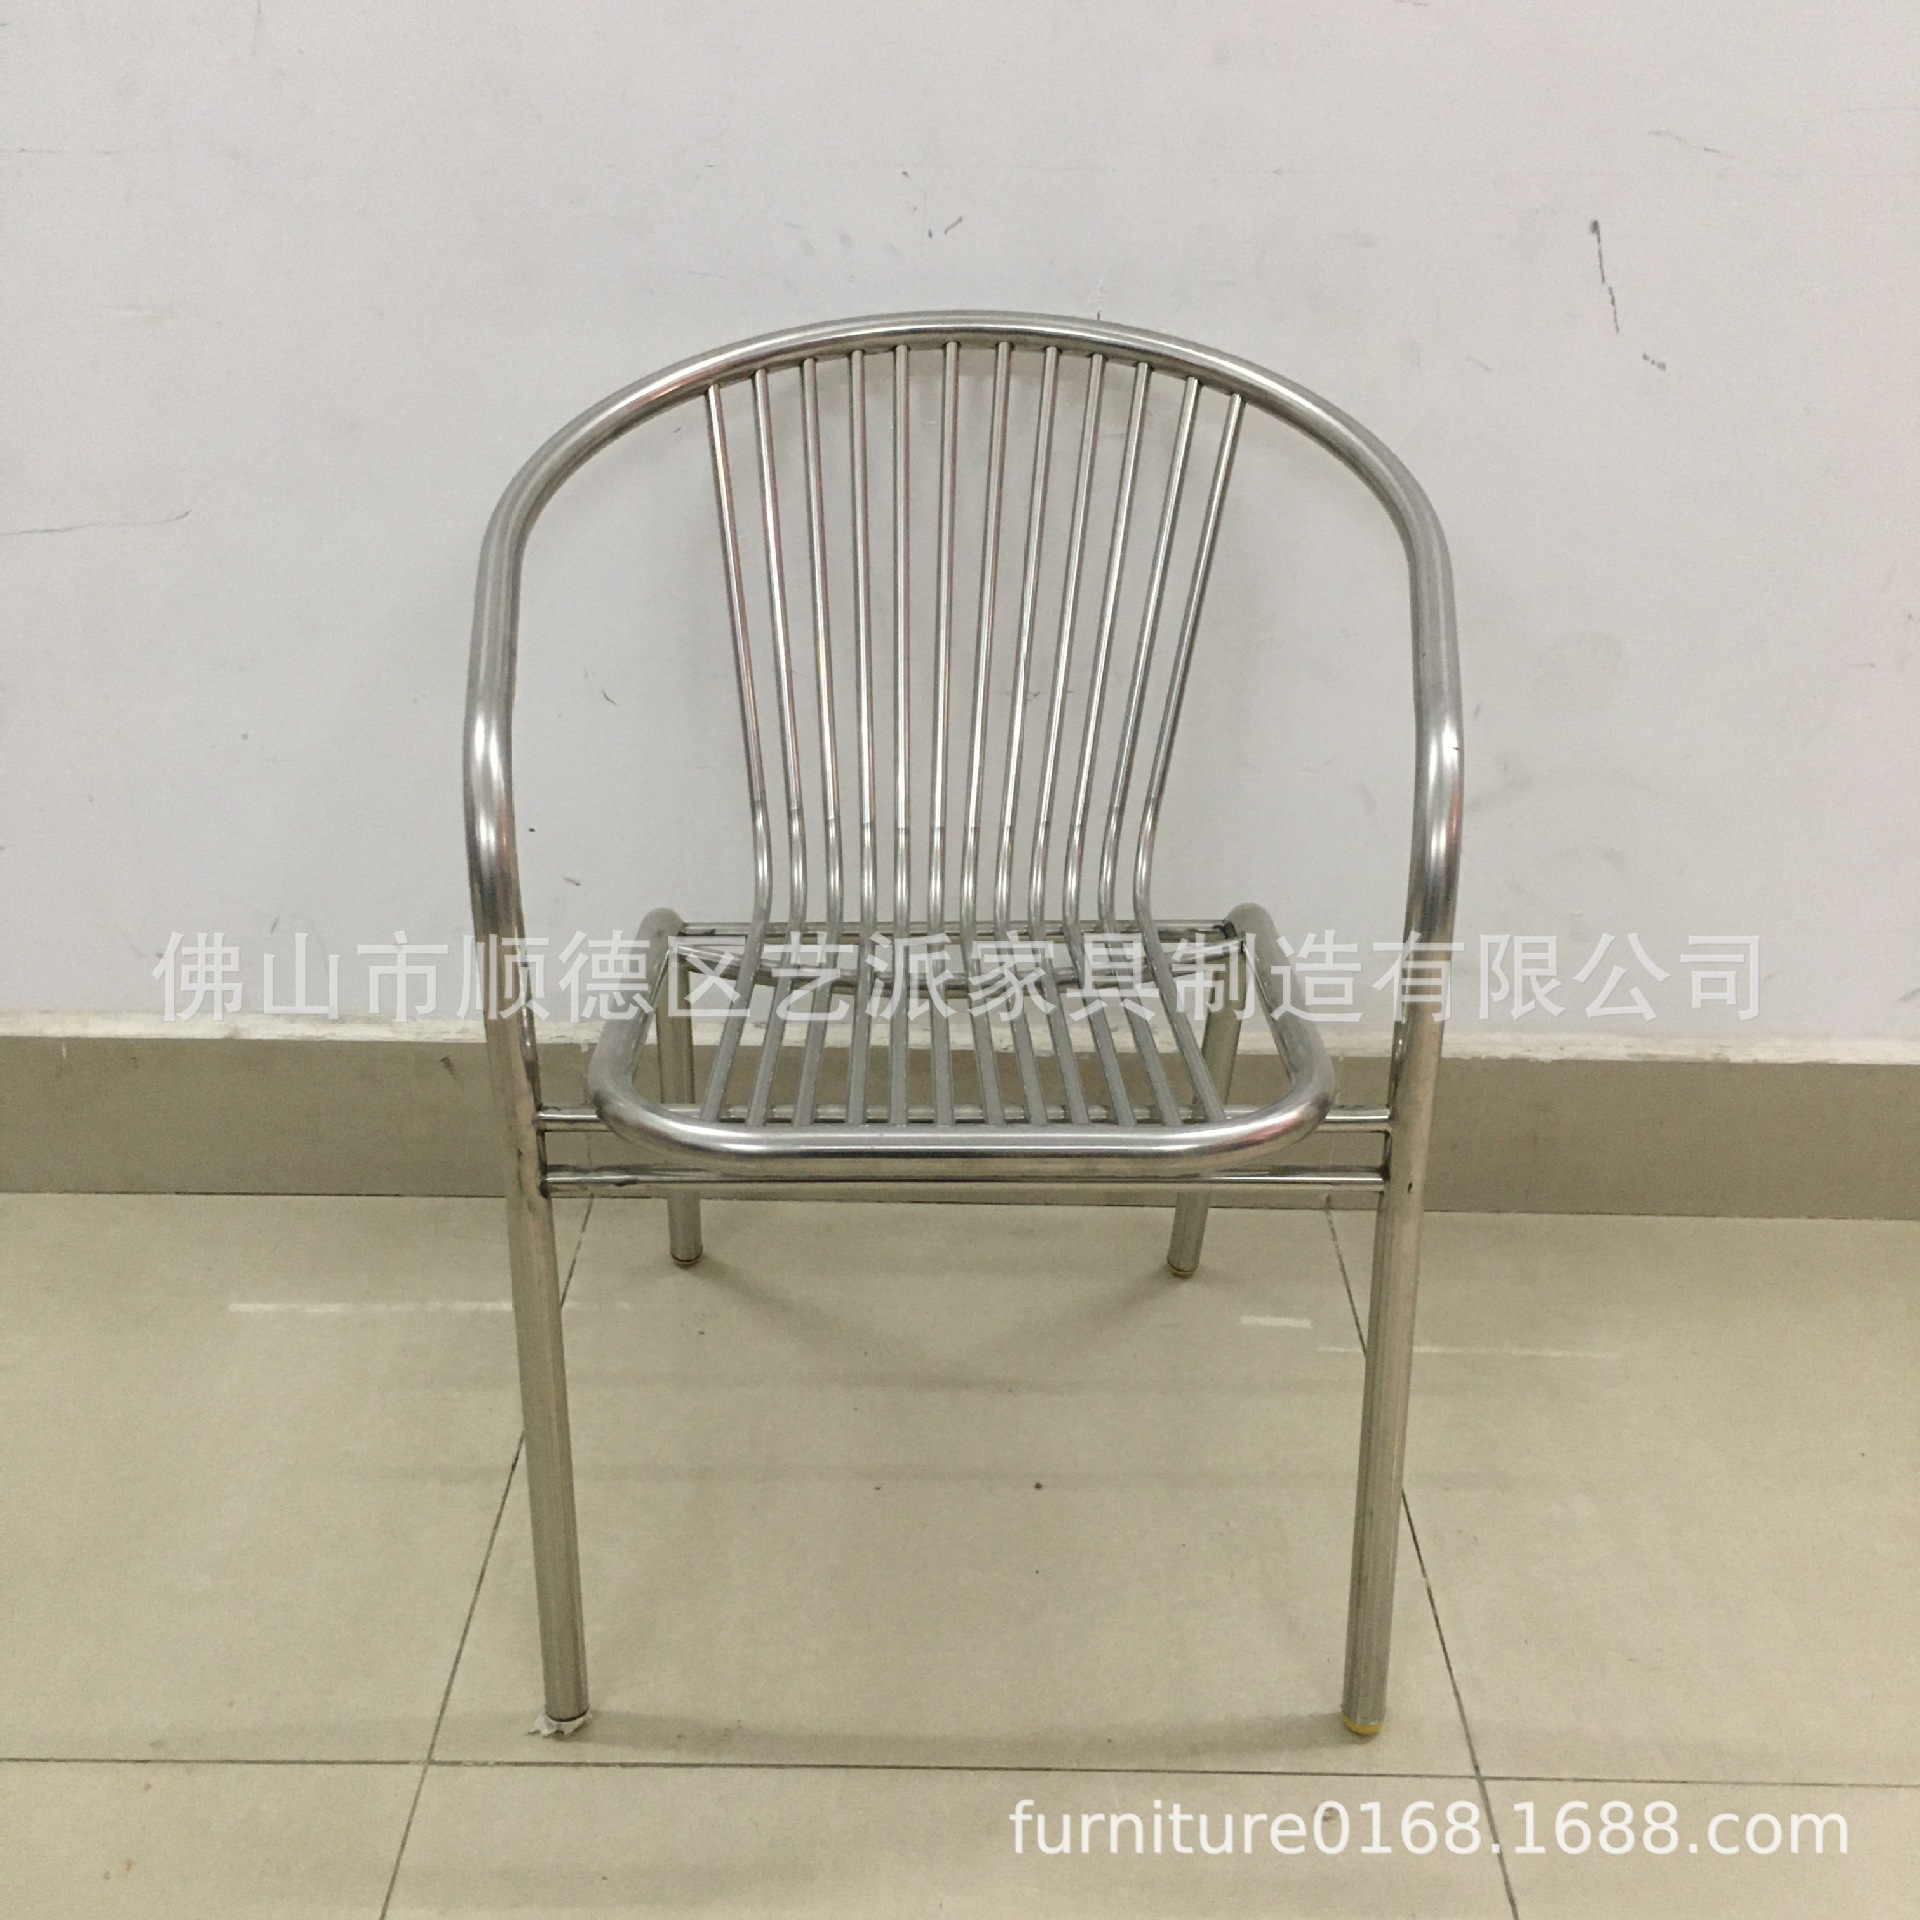 椅子室内外不锈钢椅子可堆叠中式靠背椅子现代休闲椅子